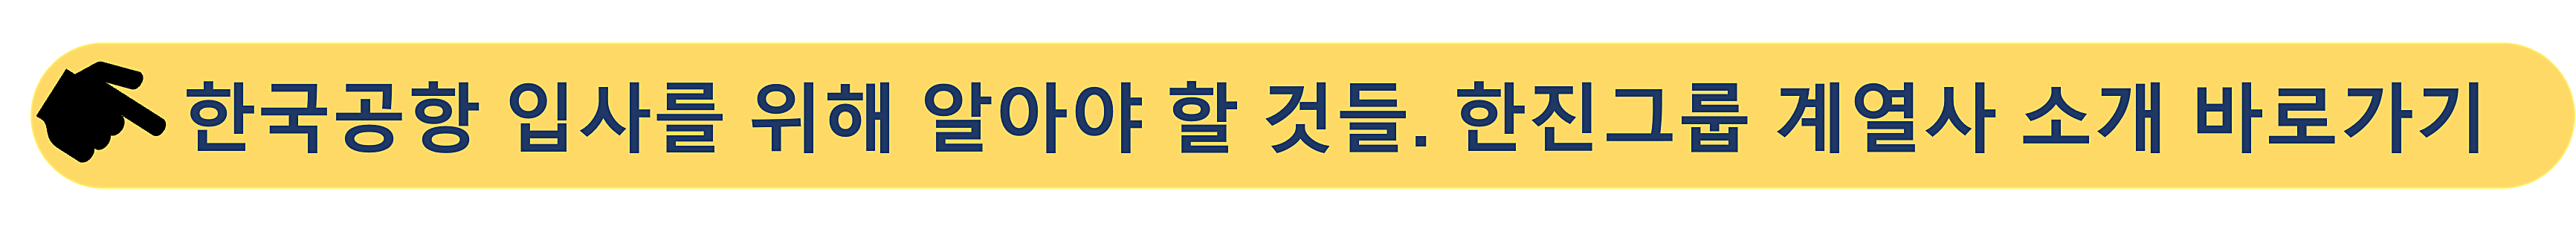 한국공항-한진그룹 계열사